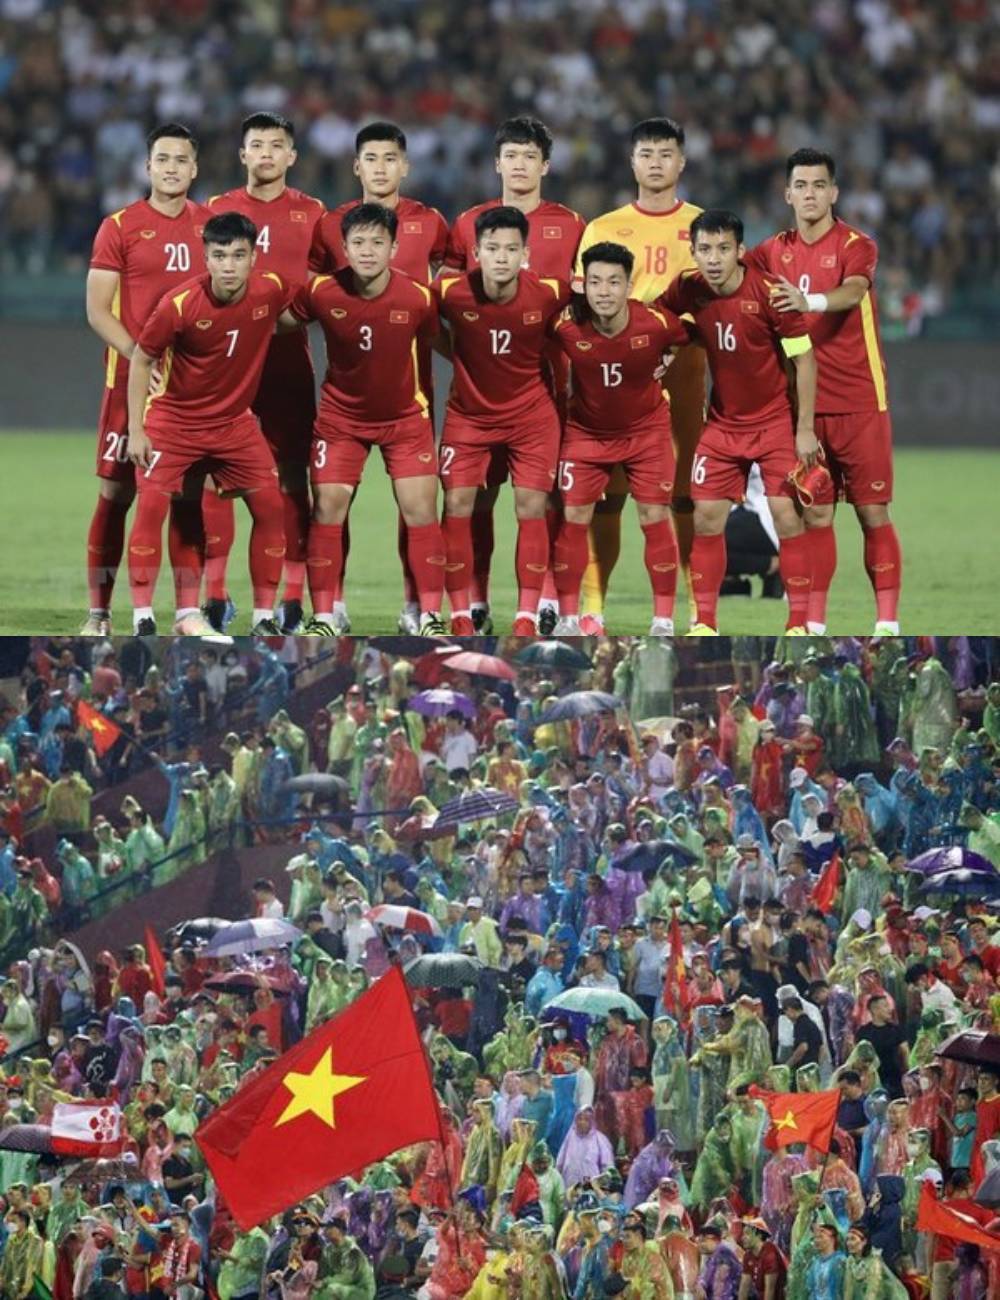 Khoảnh khắc tuyệt đẹp trong trận đấu giữa U23 Việt Nam và U23 Myanmar